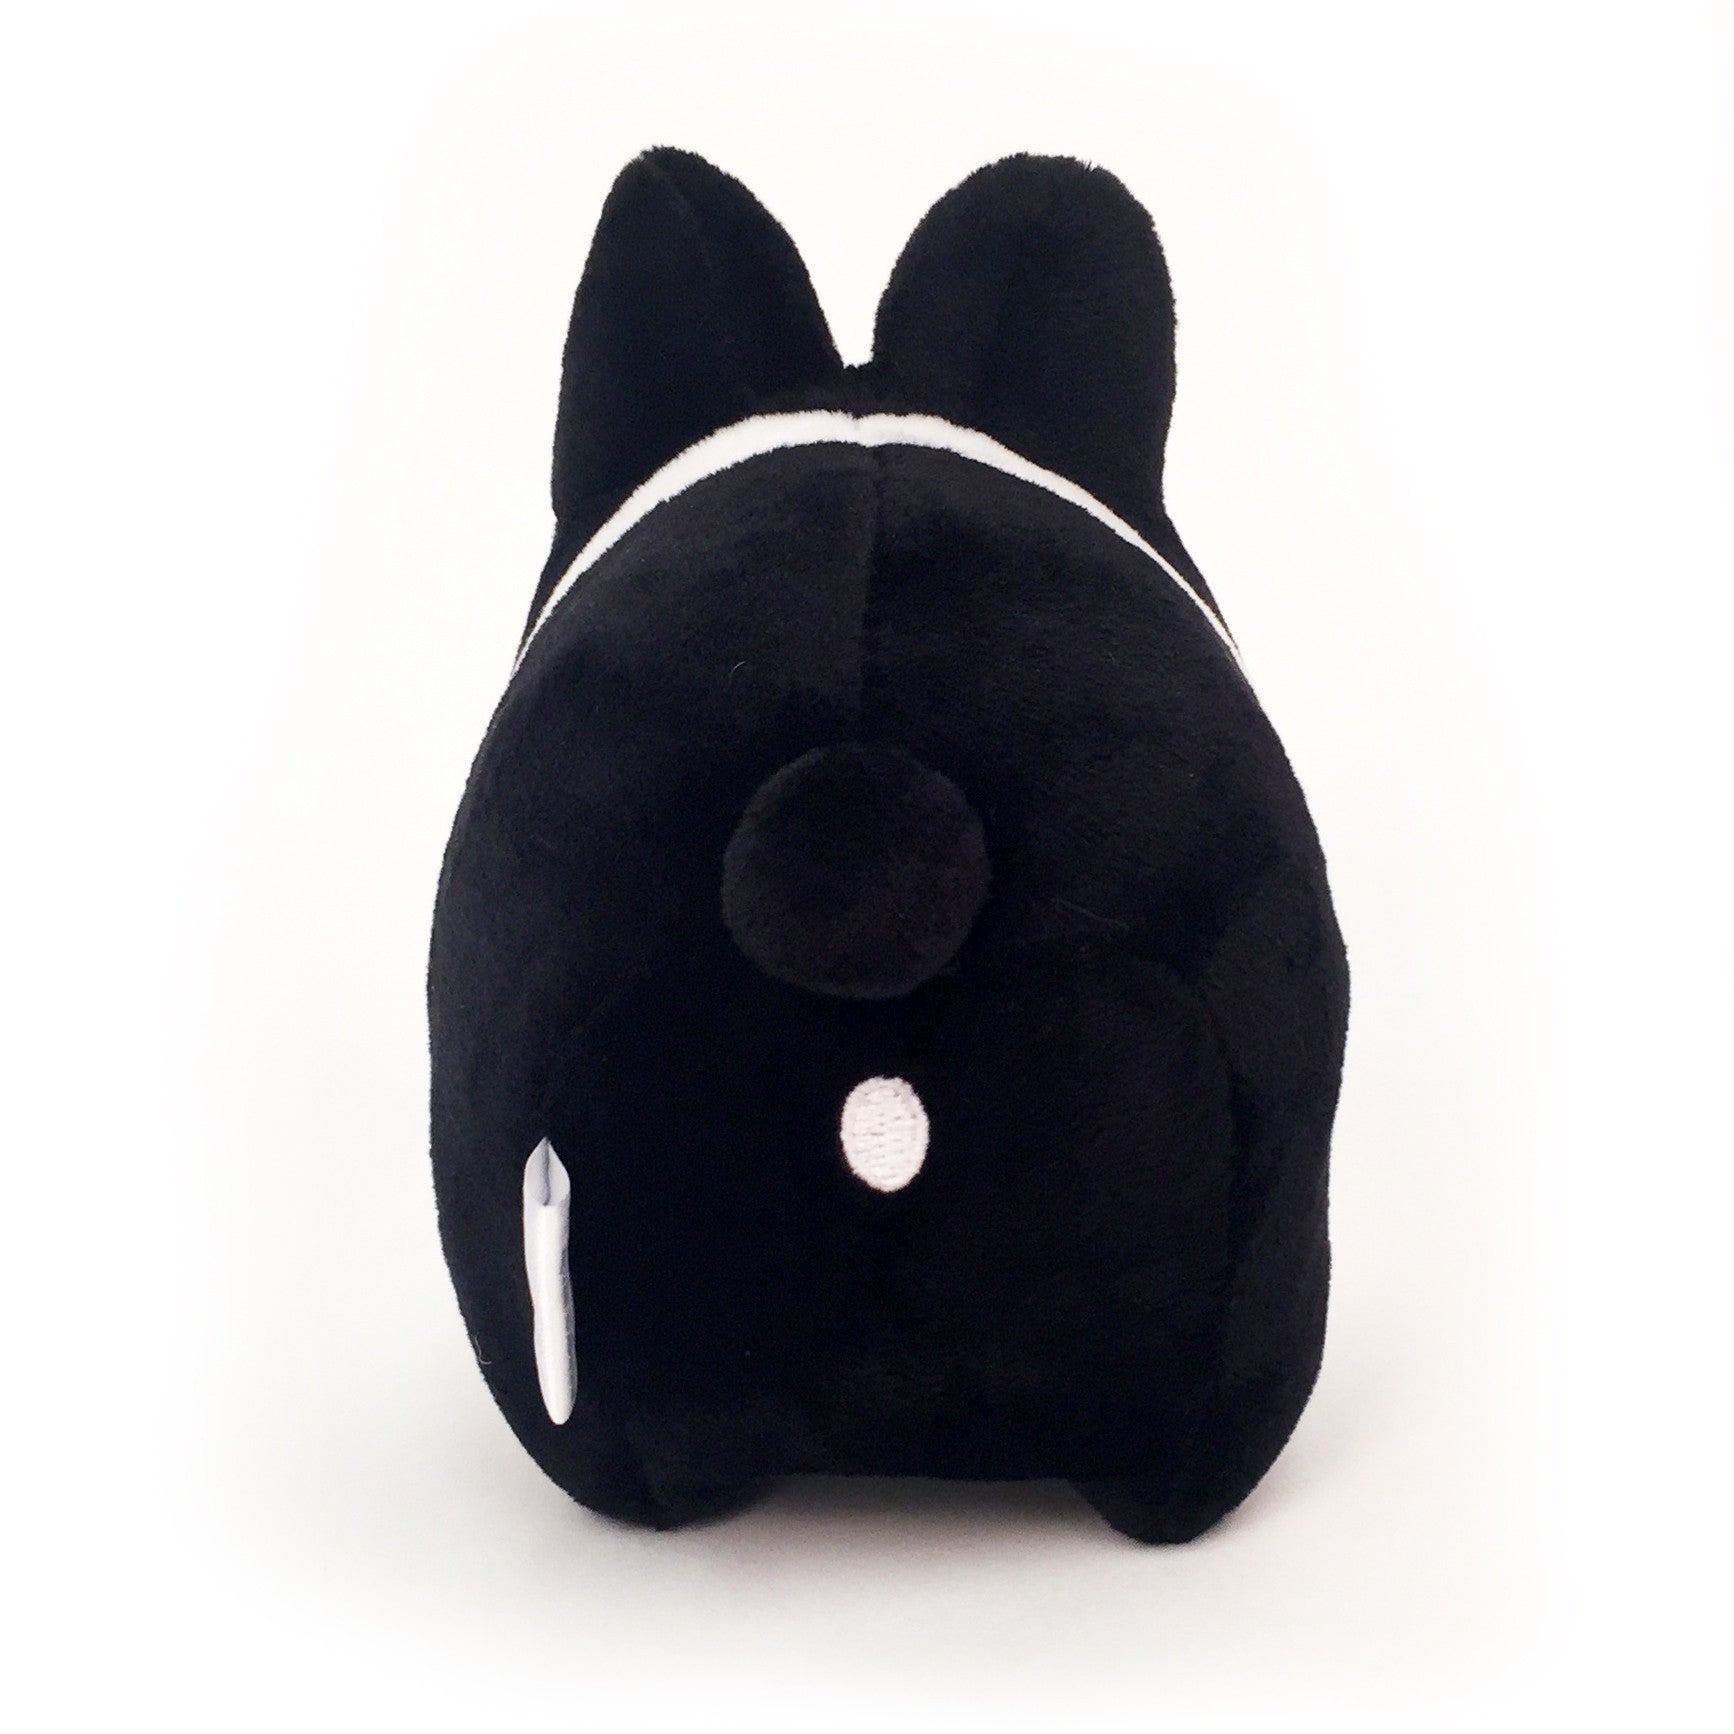 Black and White Litton 4.5” Small Plush Toy by Kidrobot - Mindzai  - 2